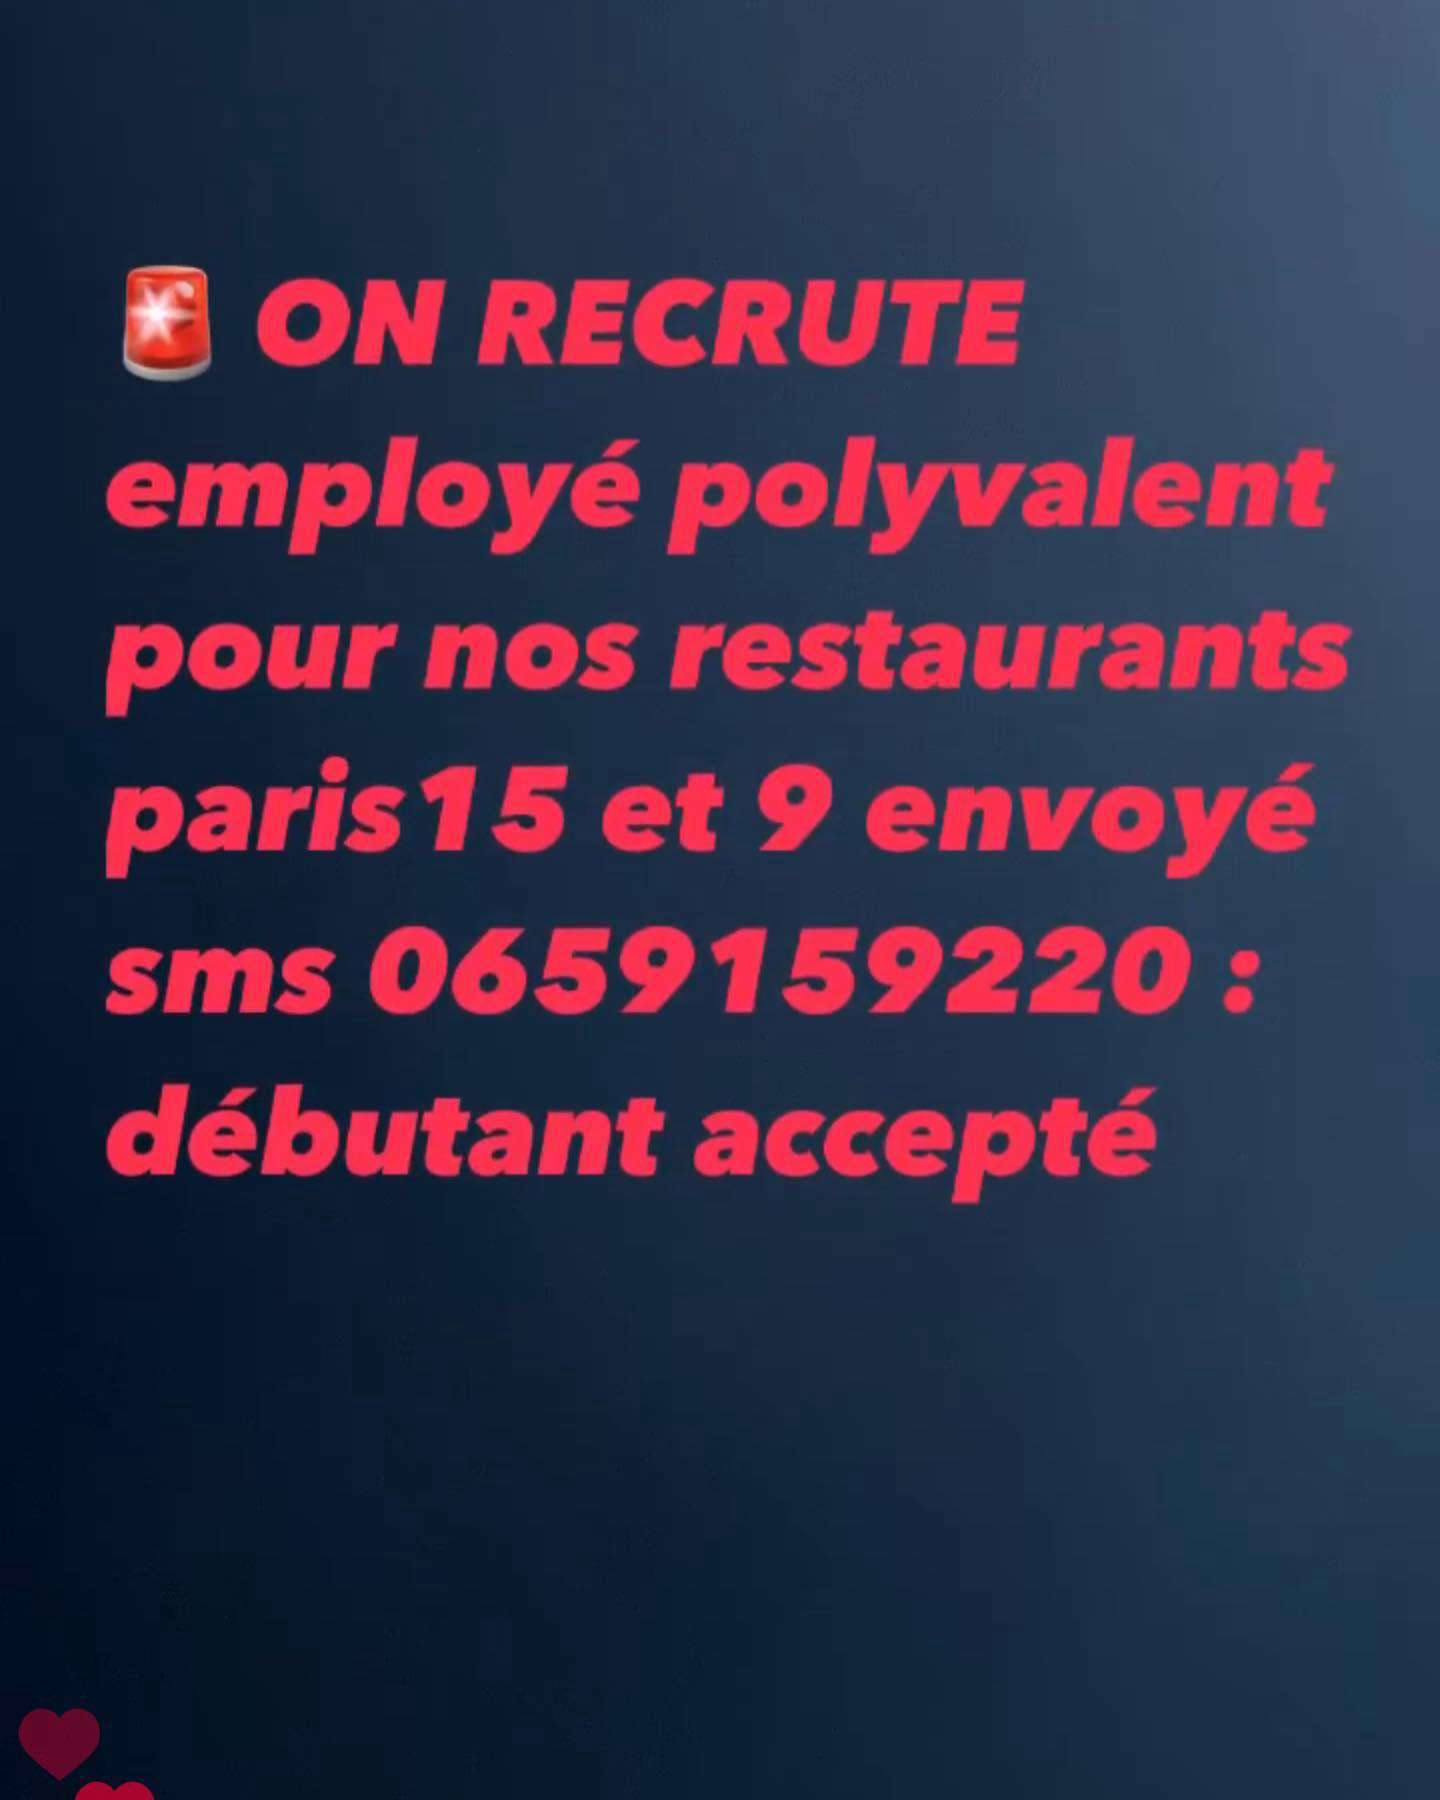 image  1 On recrute des employés polyvalents pour nos 2 restaurants paris 15 et paris 9